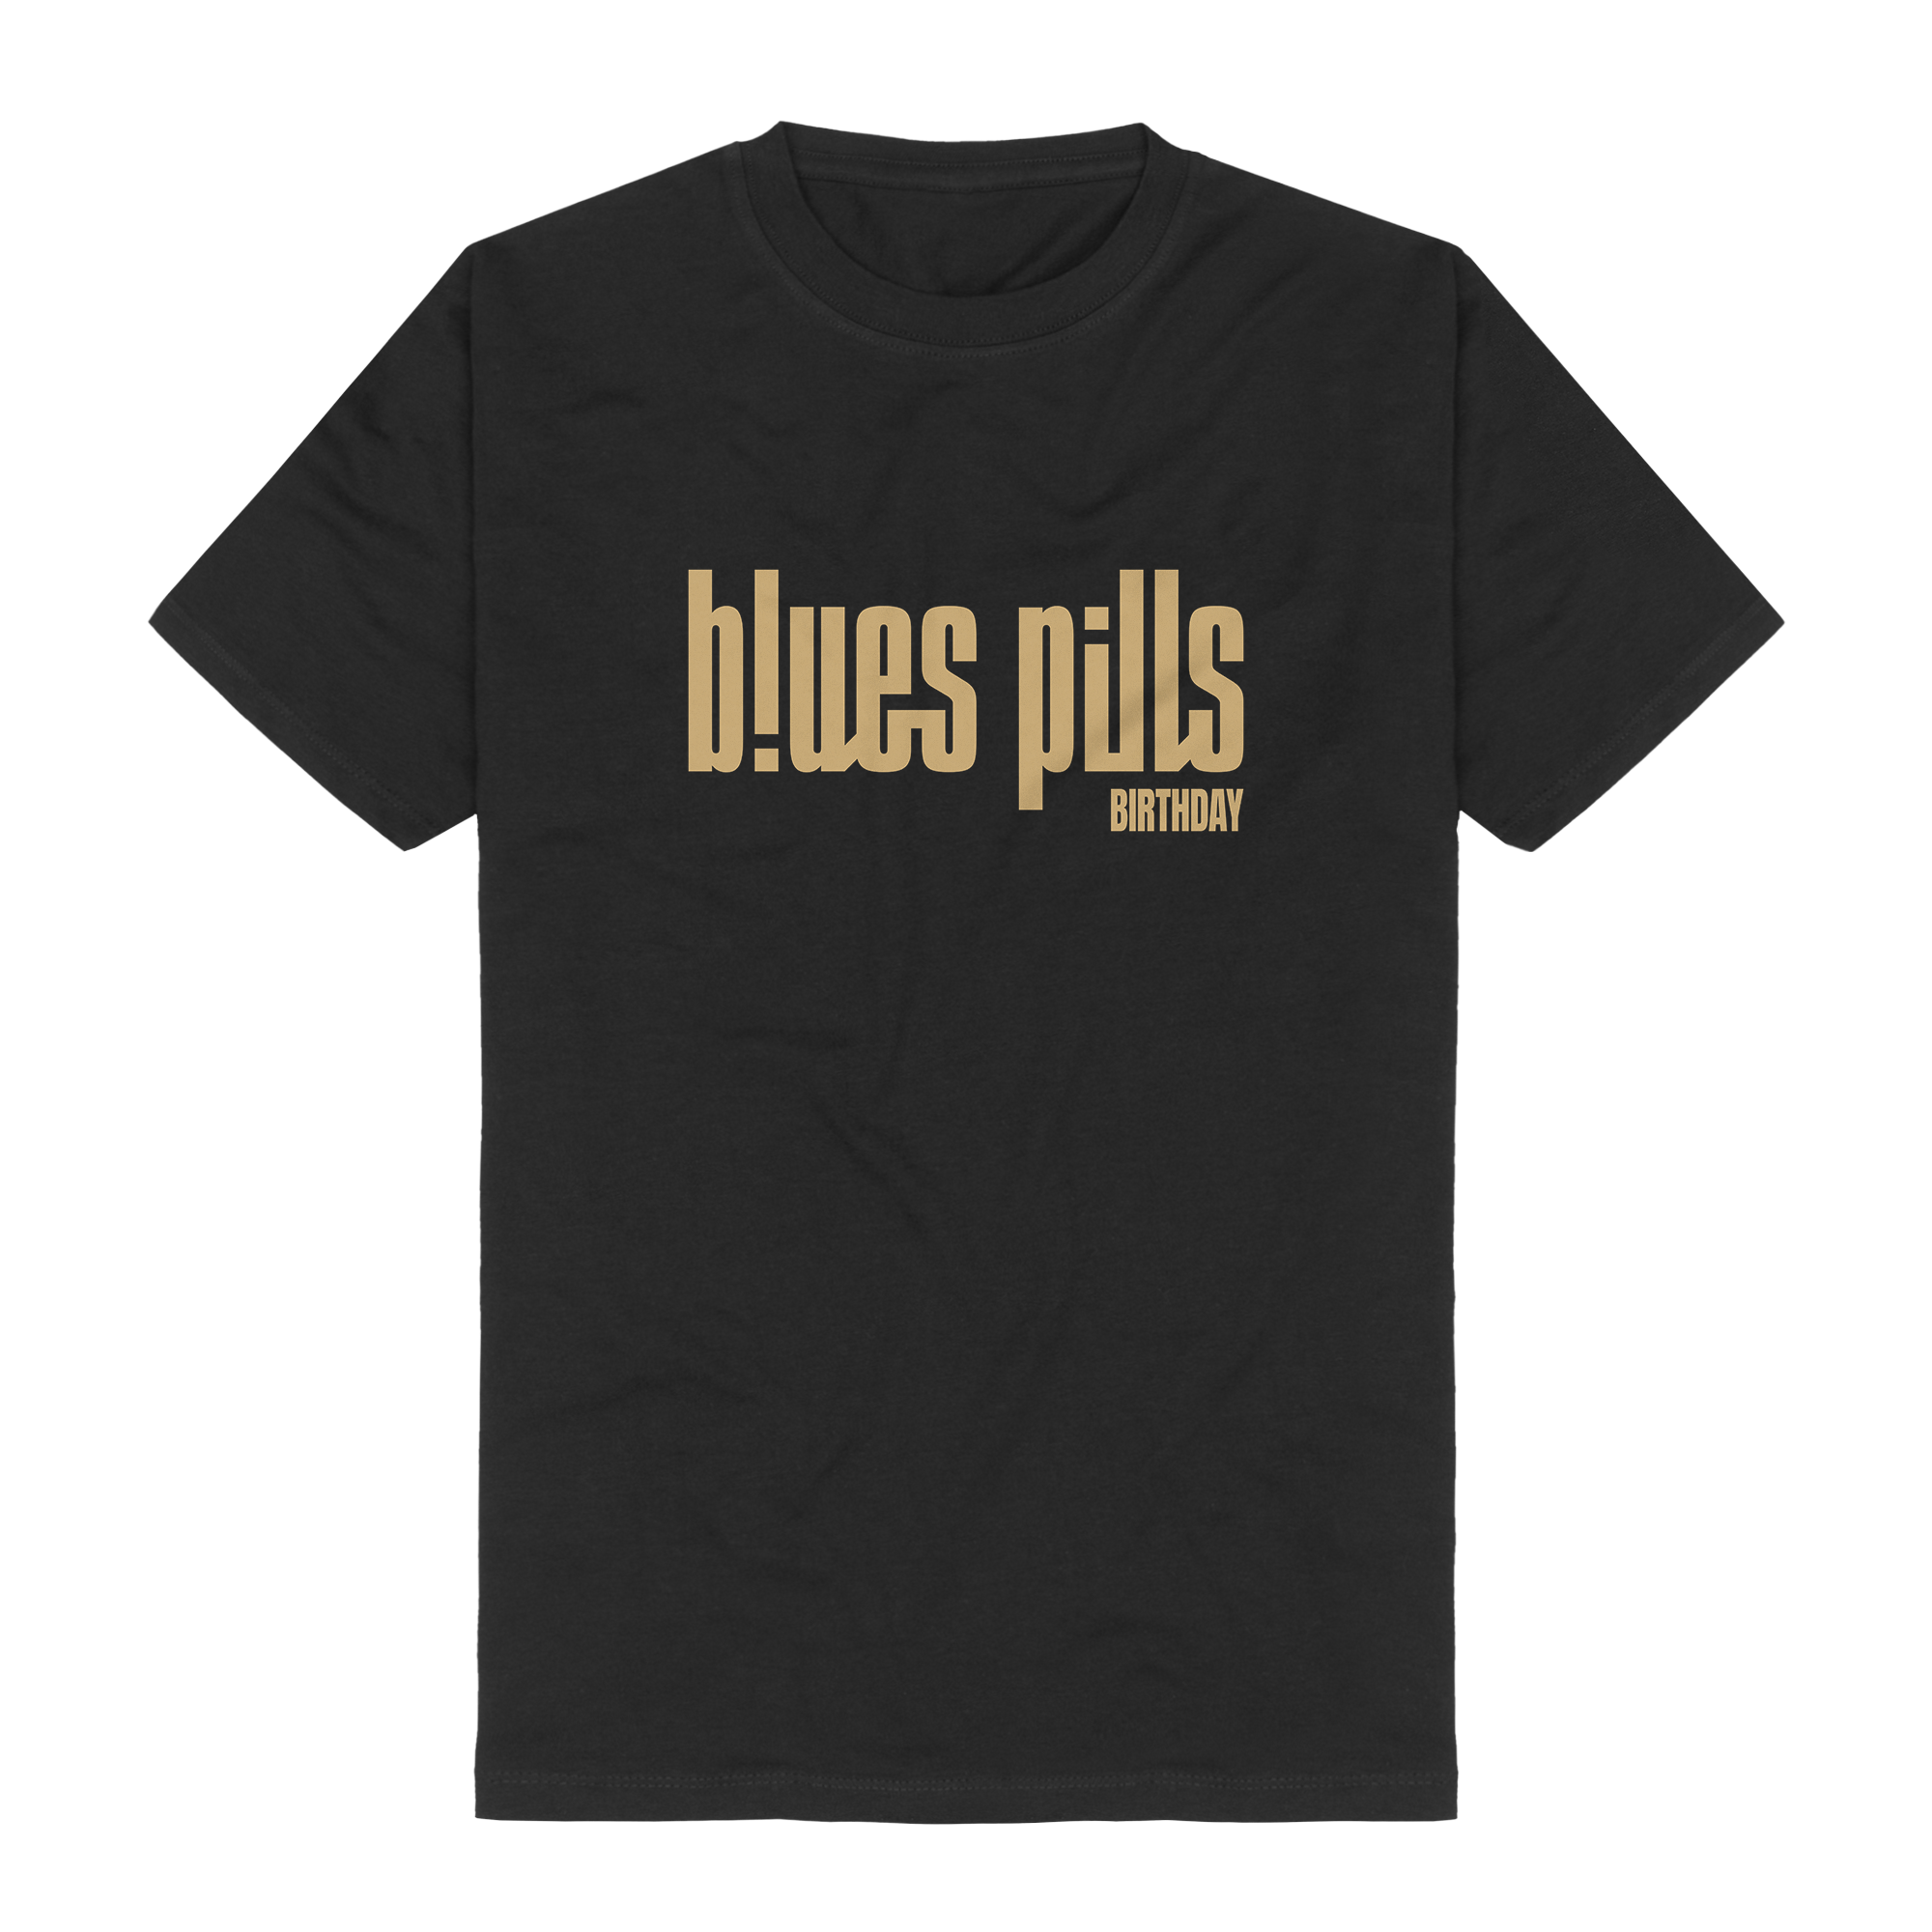 https://images.bravado.de/prod/product-assets/blues-pills/blues-pills/products/506982/web/431494/image-thumb__431494__3000x3000_original/Blues-Pills-Logo-Shirt-T-Shirt-schwarz-506982-431494.365c304e.png